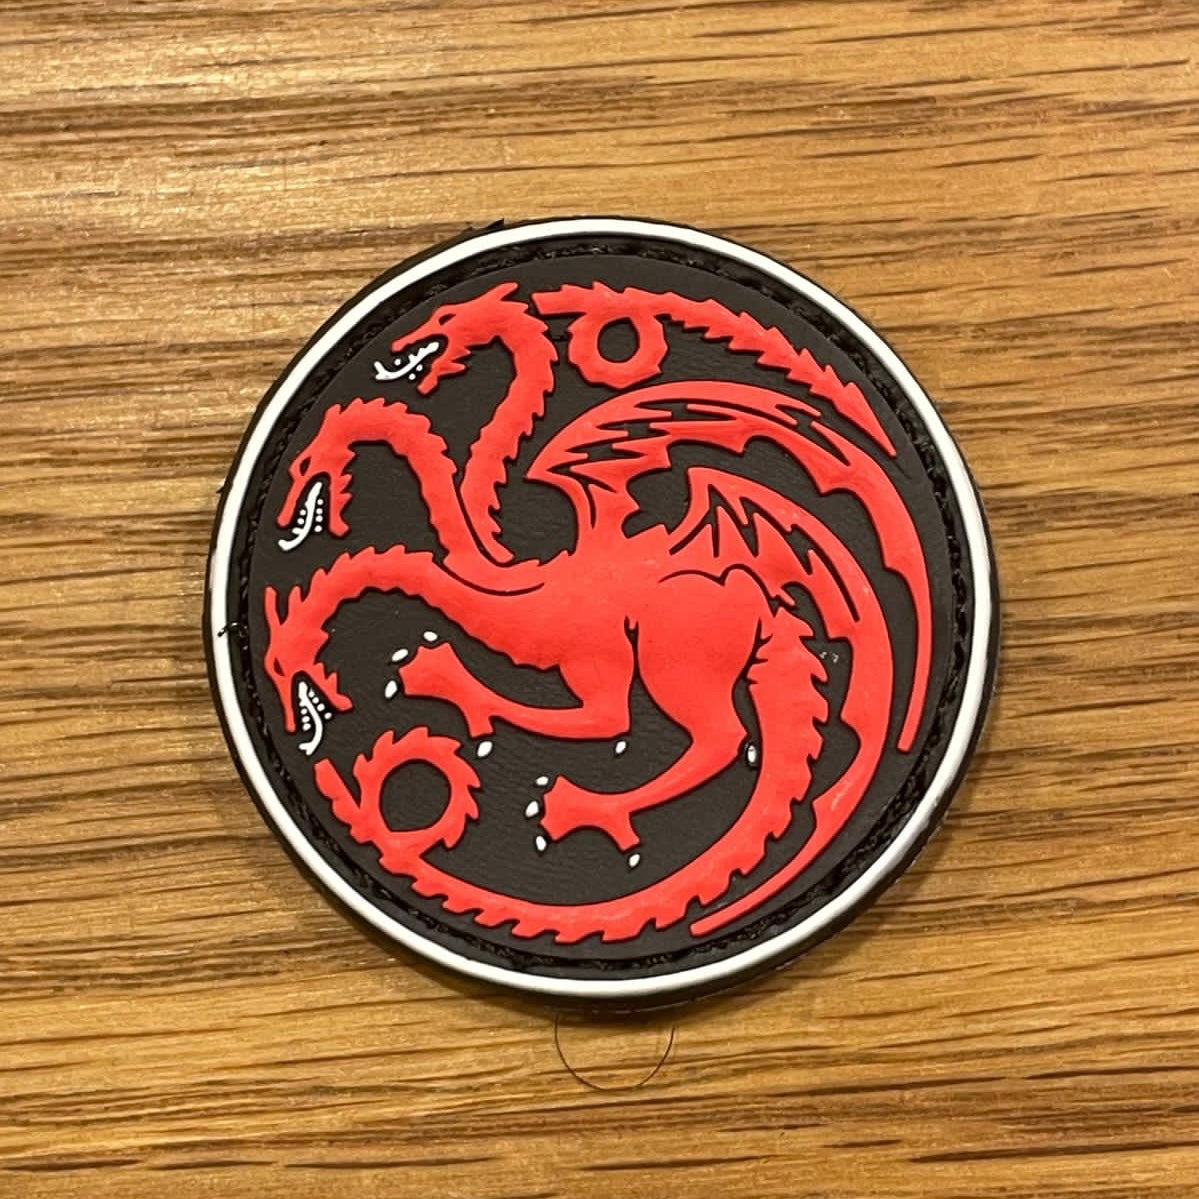 The Targaryen Dracarys PVC patch